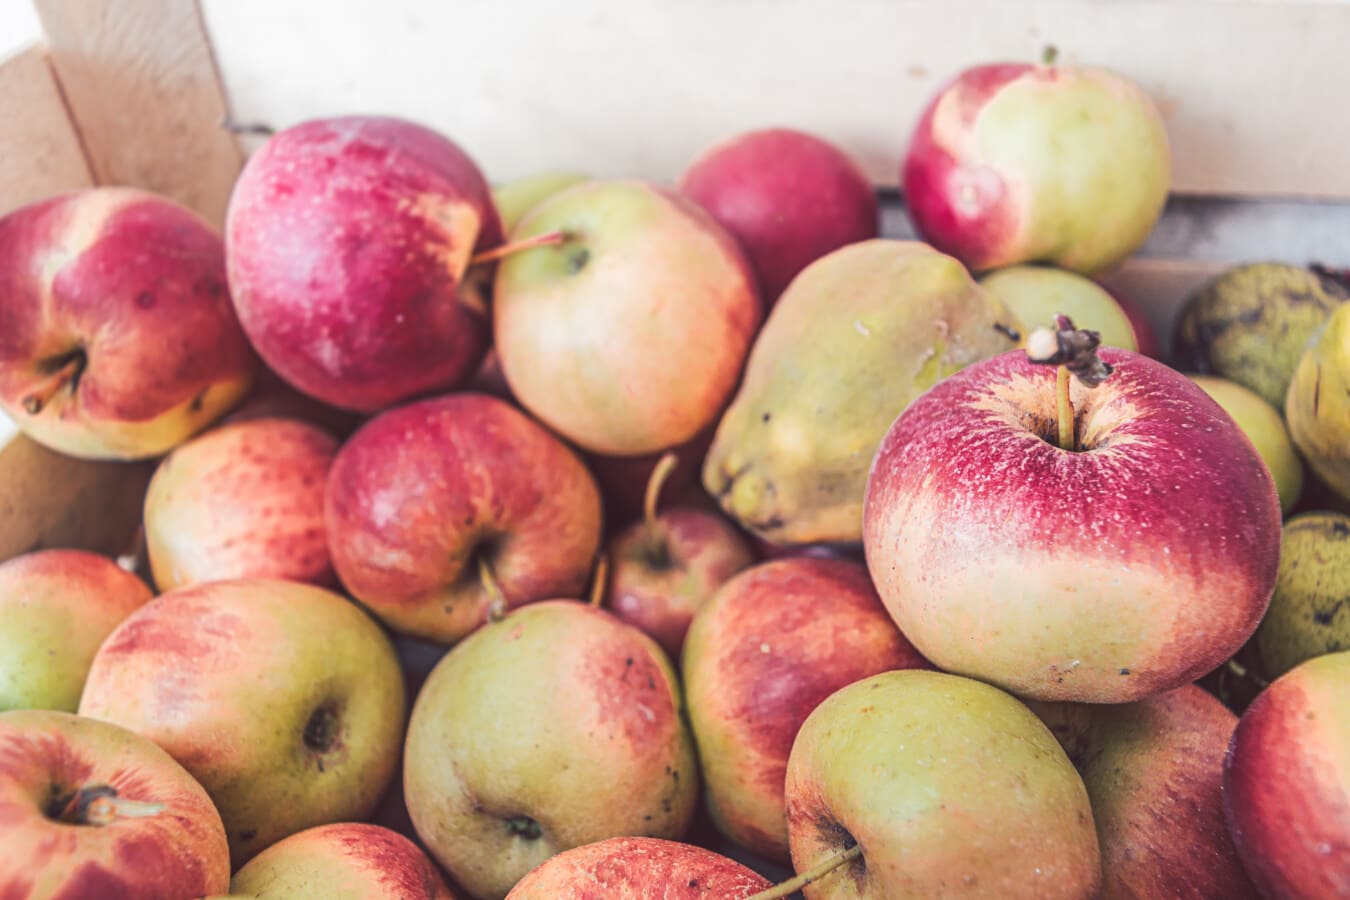 органические, яблоки, фрукты, спелые плоды, Продукция, сельское хозяйство, свежий, вкусный, яблоко, здоровые